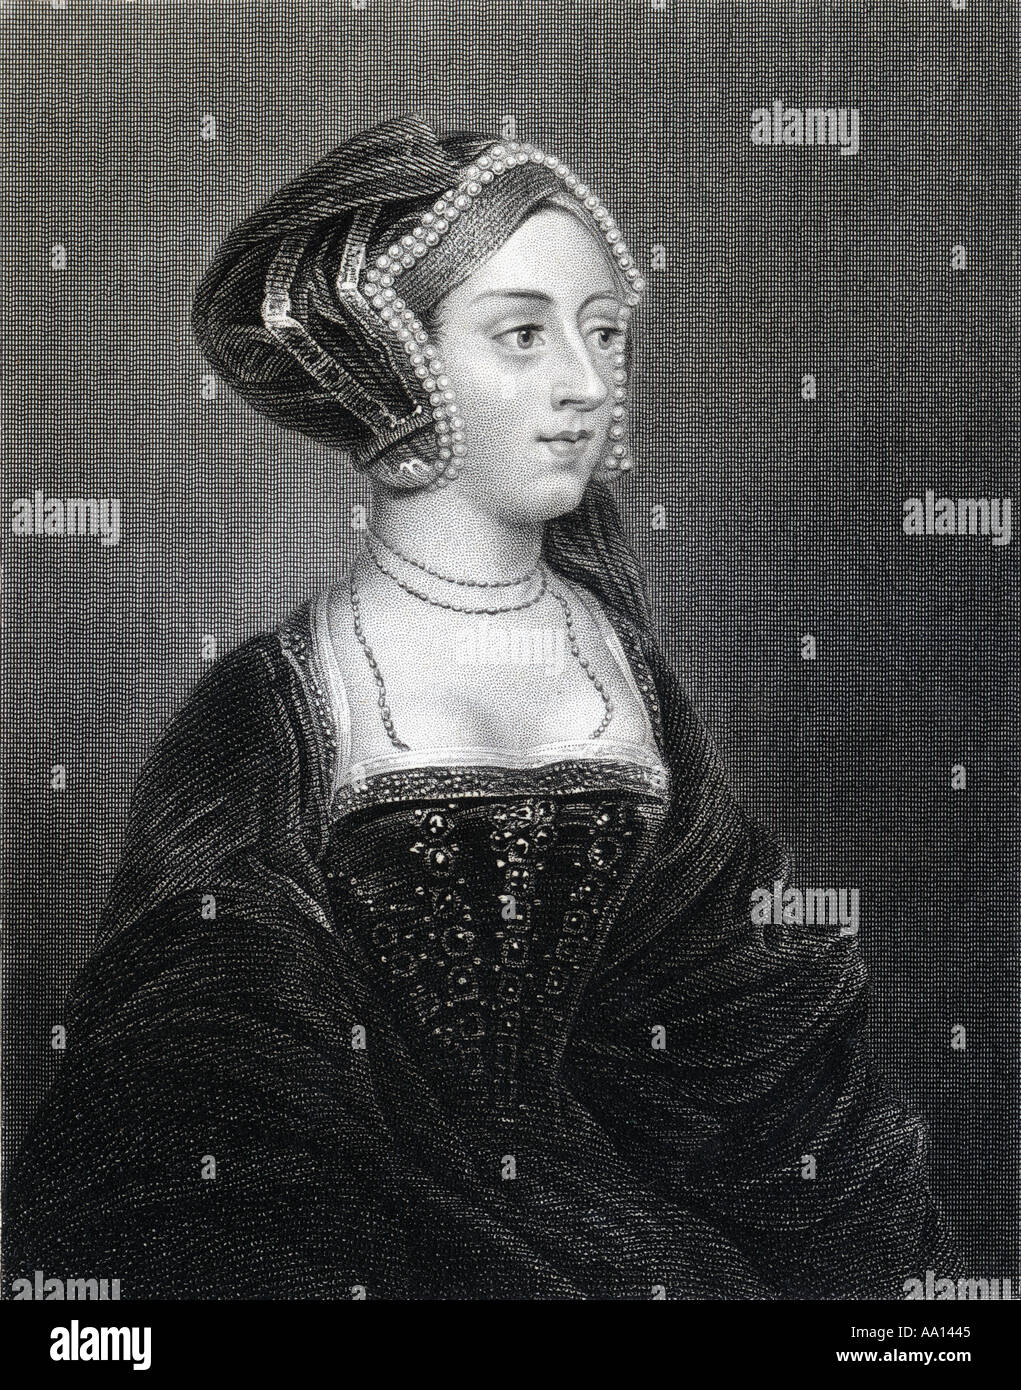 Anne Boleyn également orthographié Bullen, 1507 - 1536. Reine d'Angleterre comme la seconde épouse du roi Henry VIII. Banque D'Images